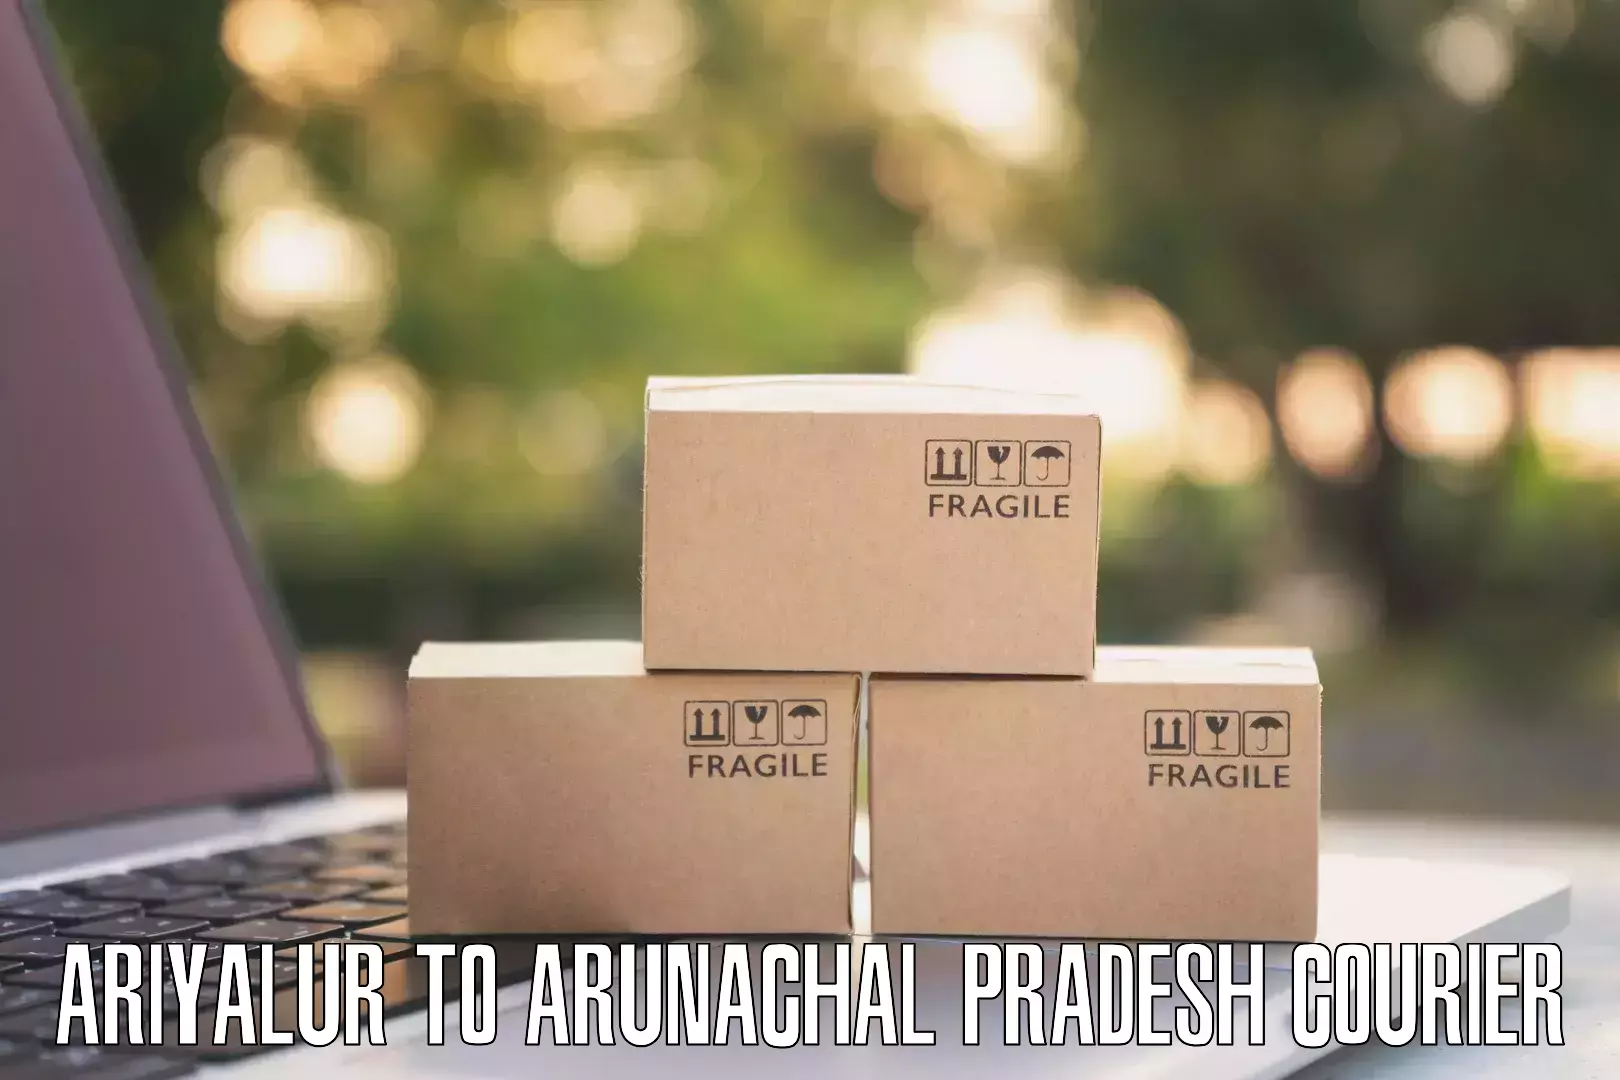 Professional courier handling Ariyalur to Jairampur